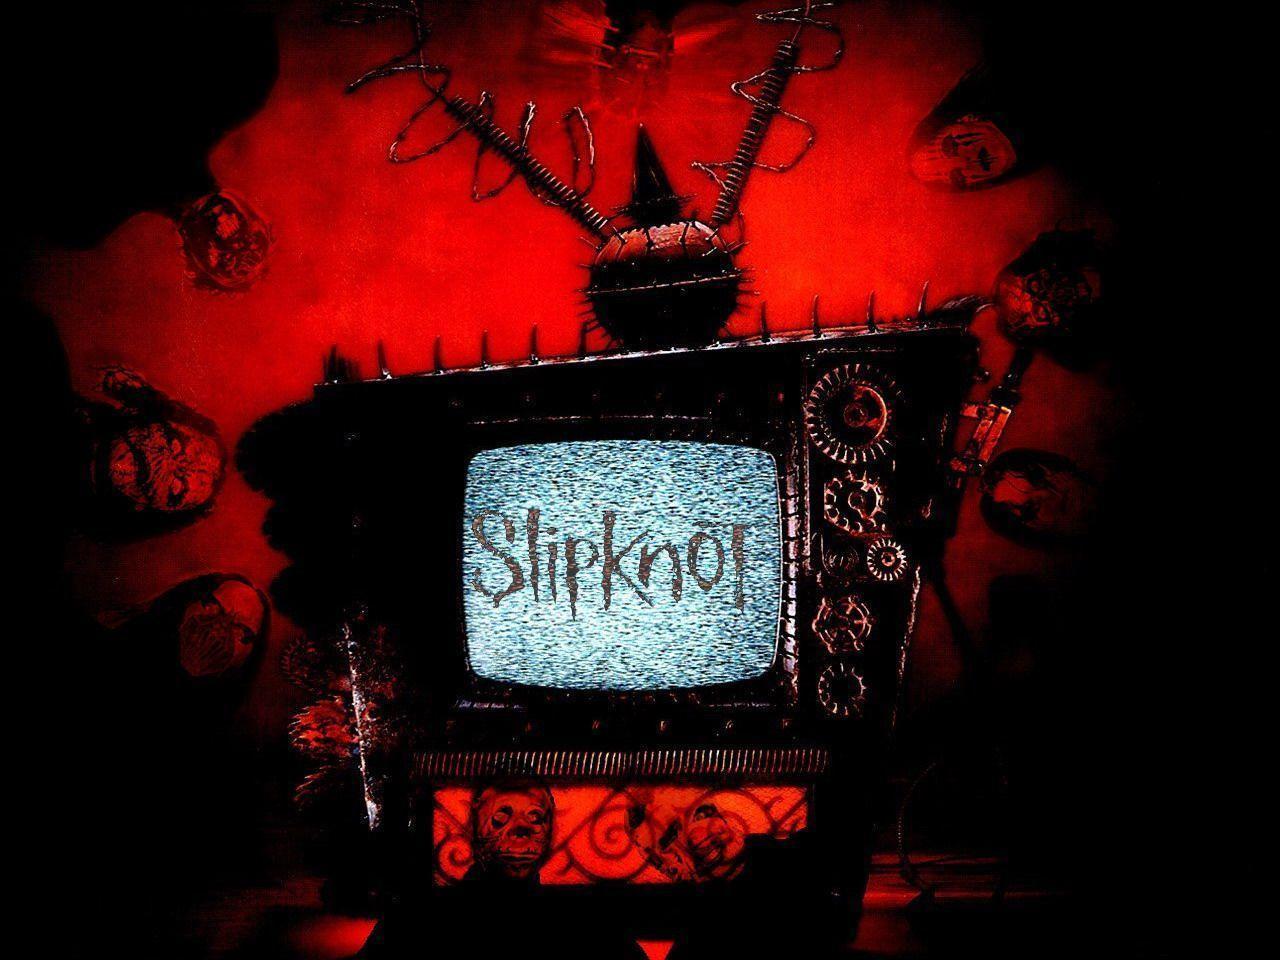 Slipknot Wallpaper Free Music Wallpaper, Photo